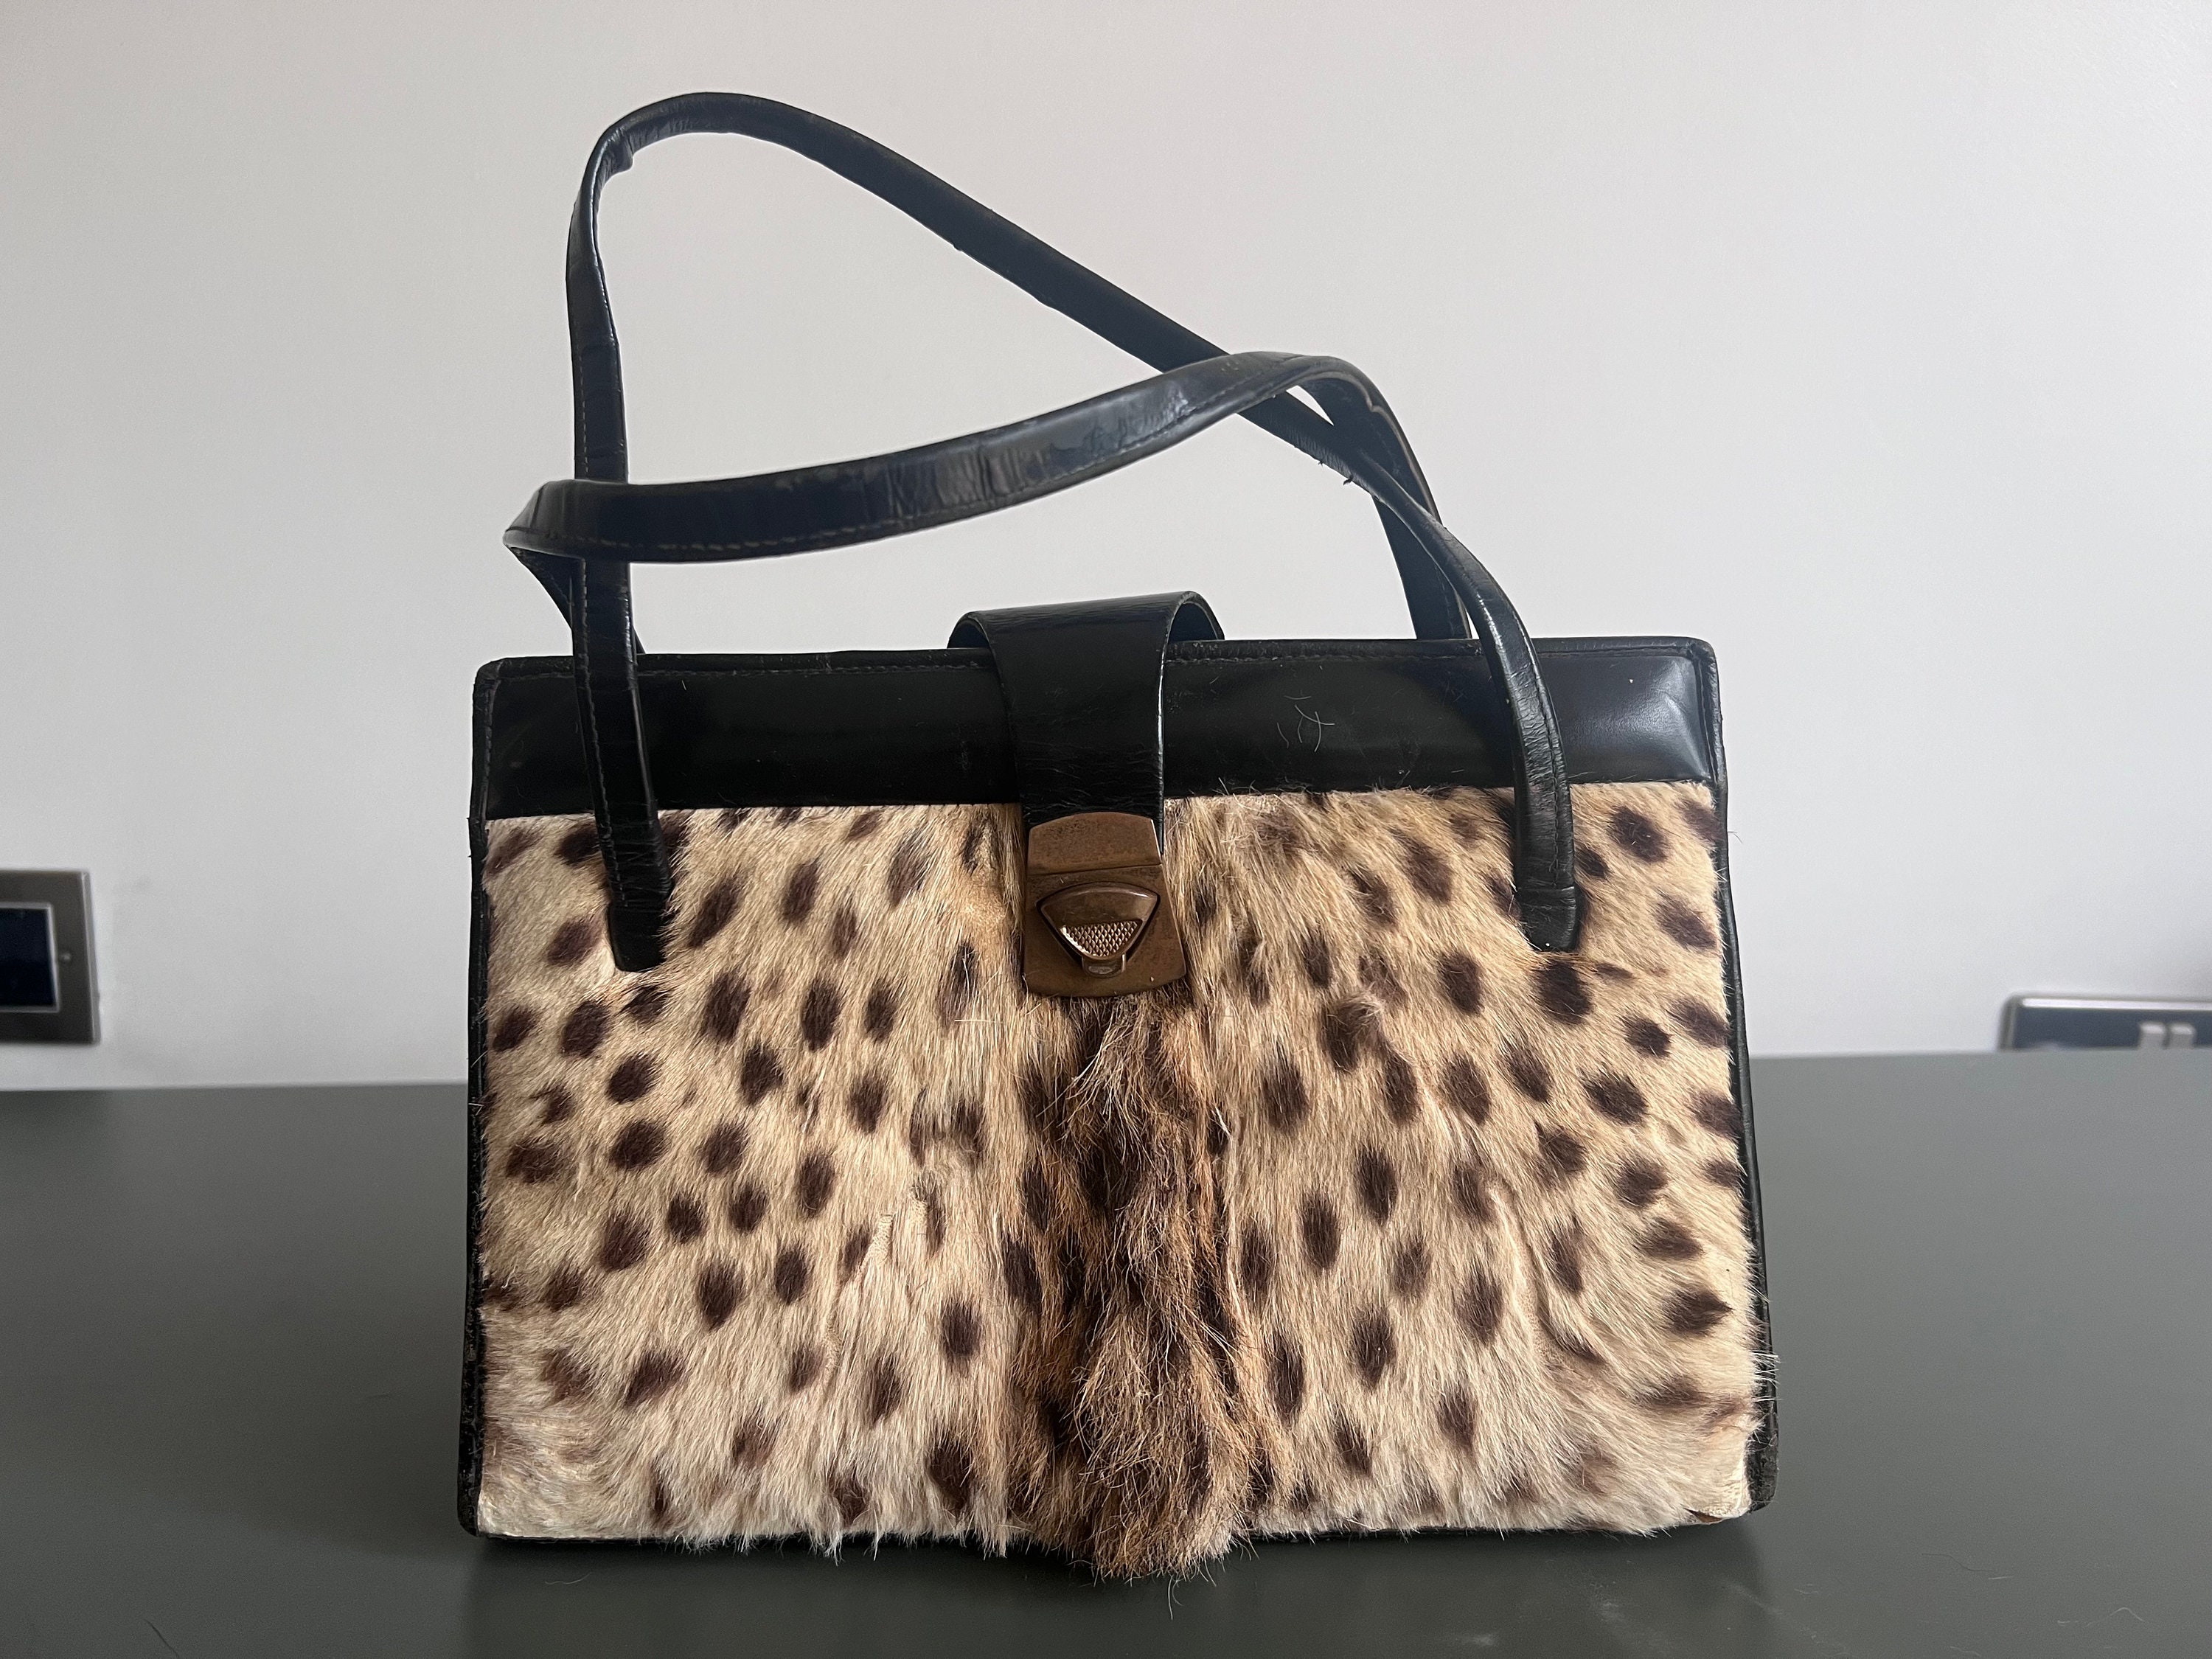 Mabel Hair on Hide Leather Leopard Fringe Turquoise Shoulder Bag Purse –  The Vintage Leopard